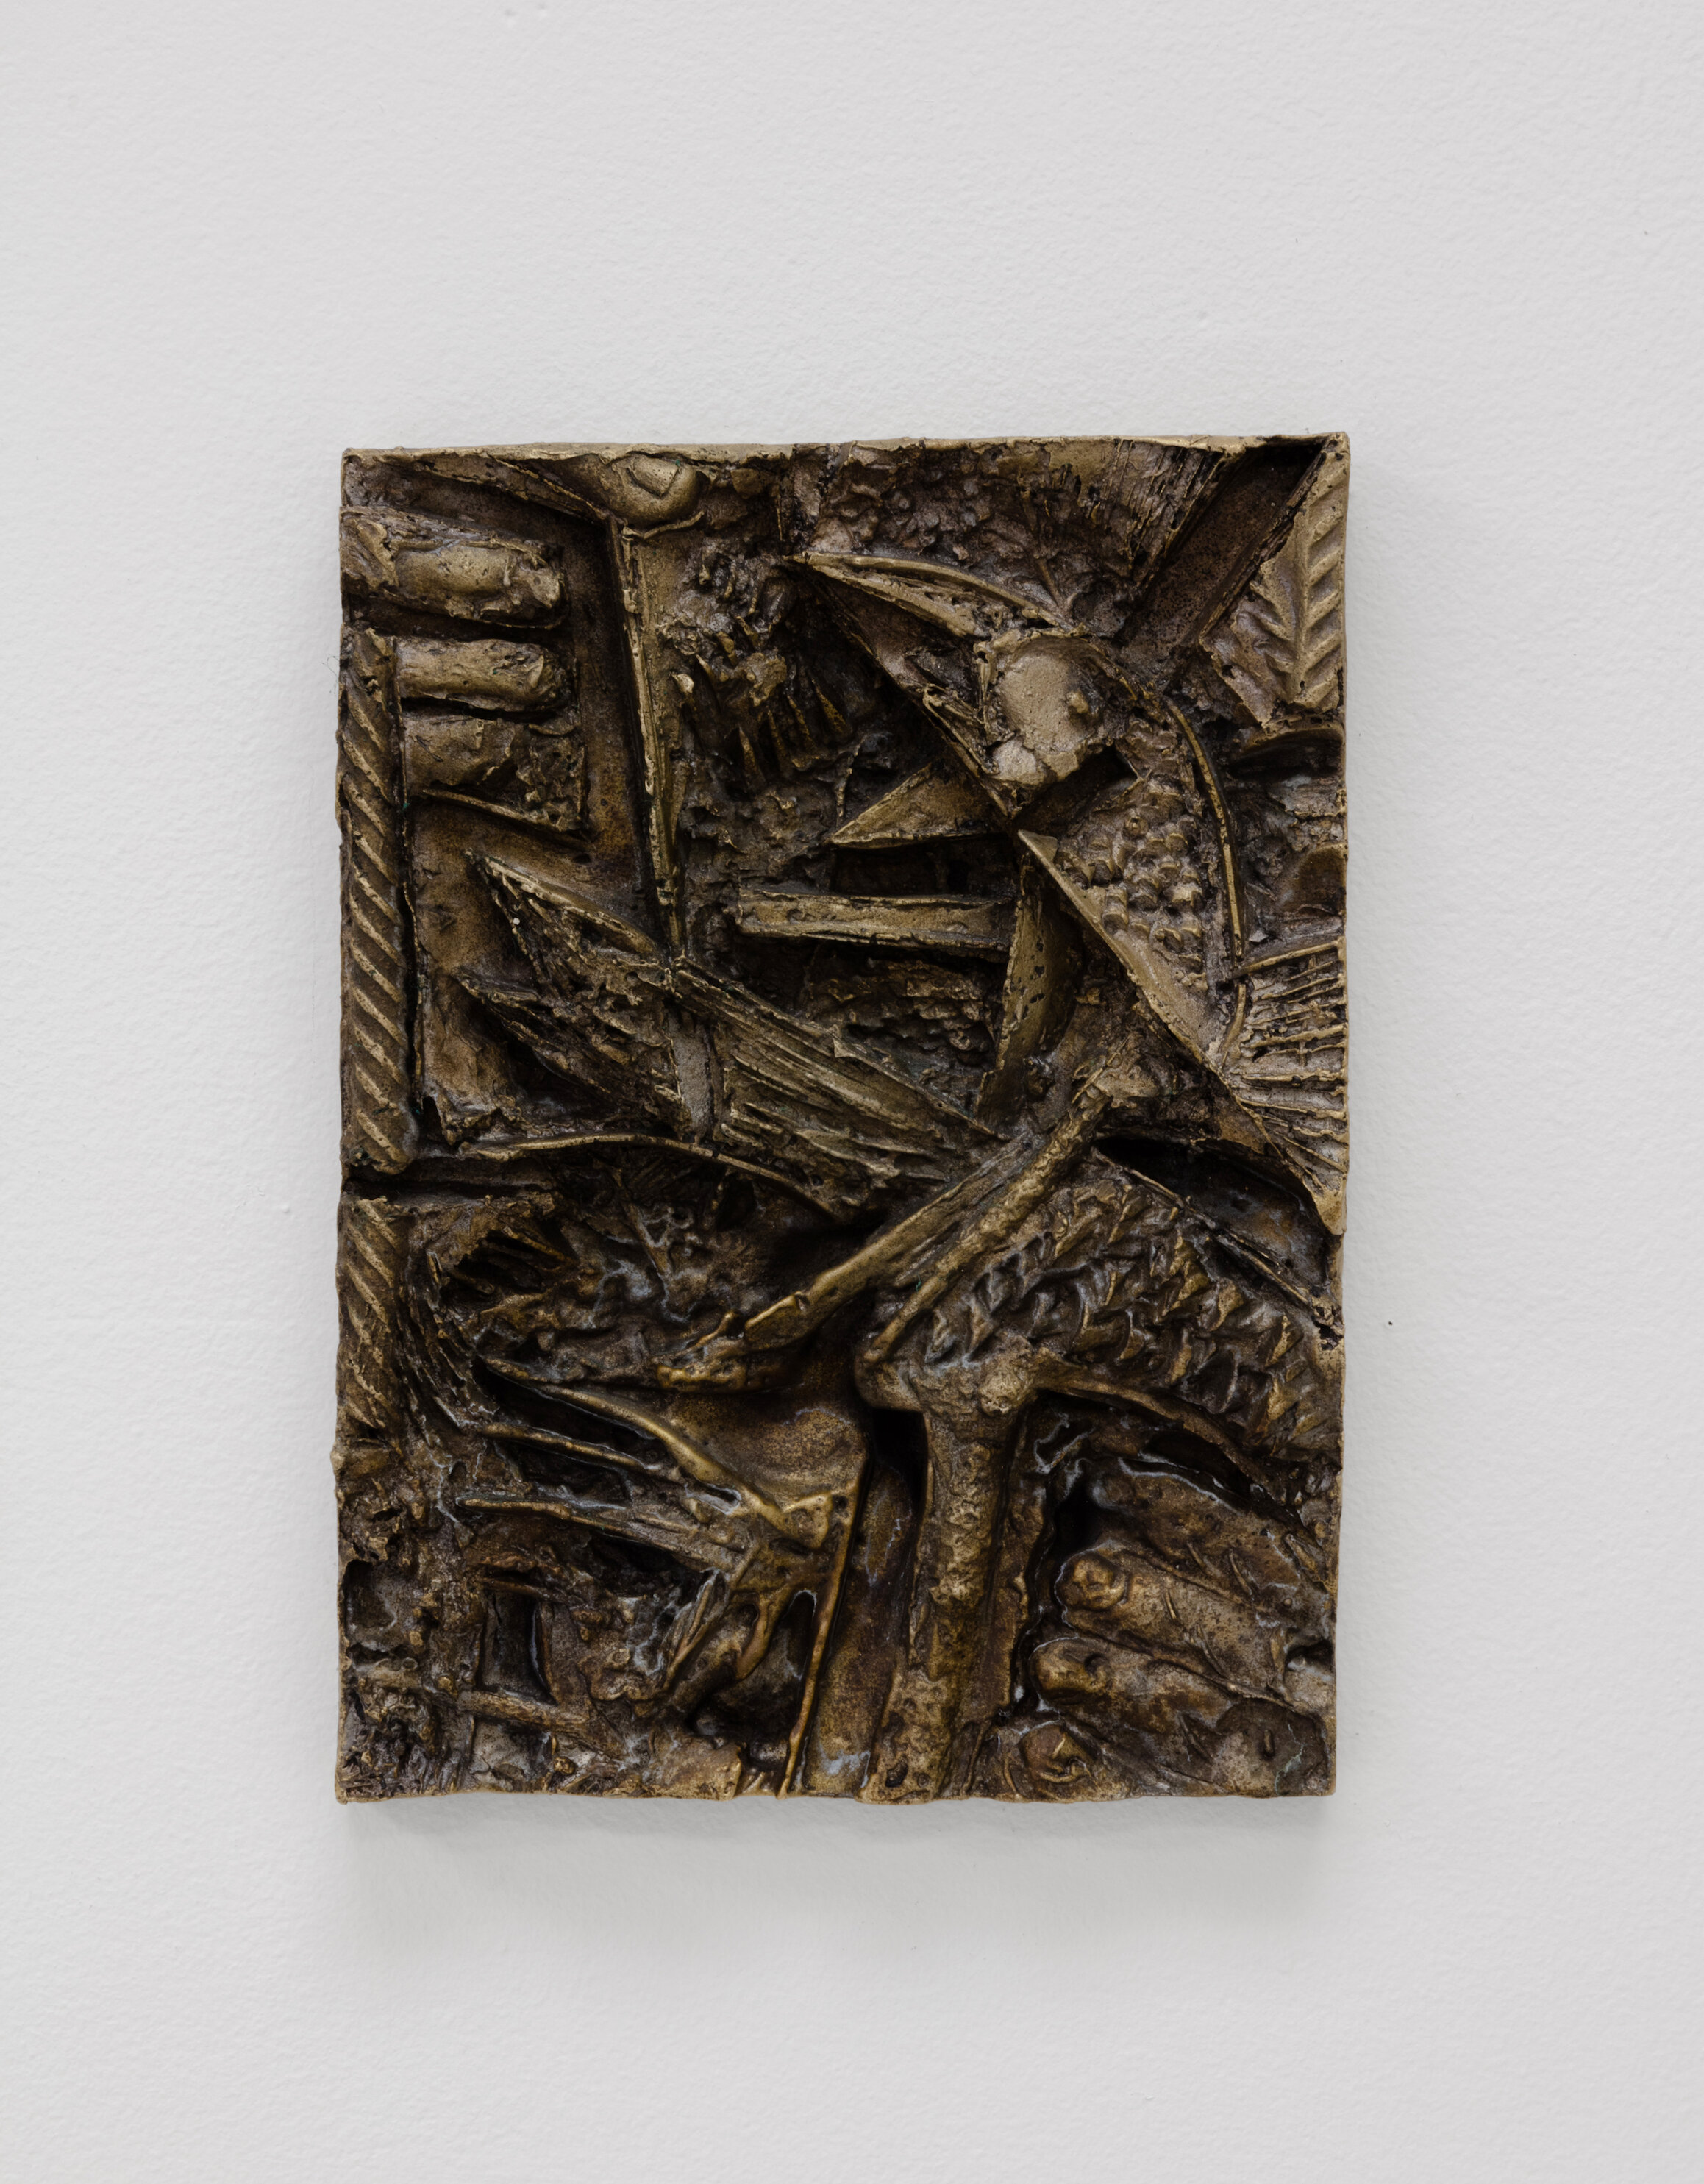  Martin Chramosta, Poule sans titre, 2019, bronze, 26 x19 cm 